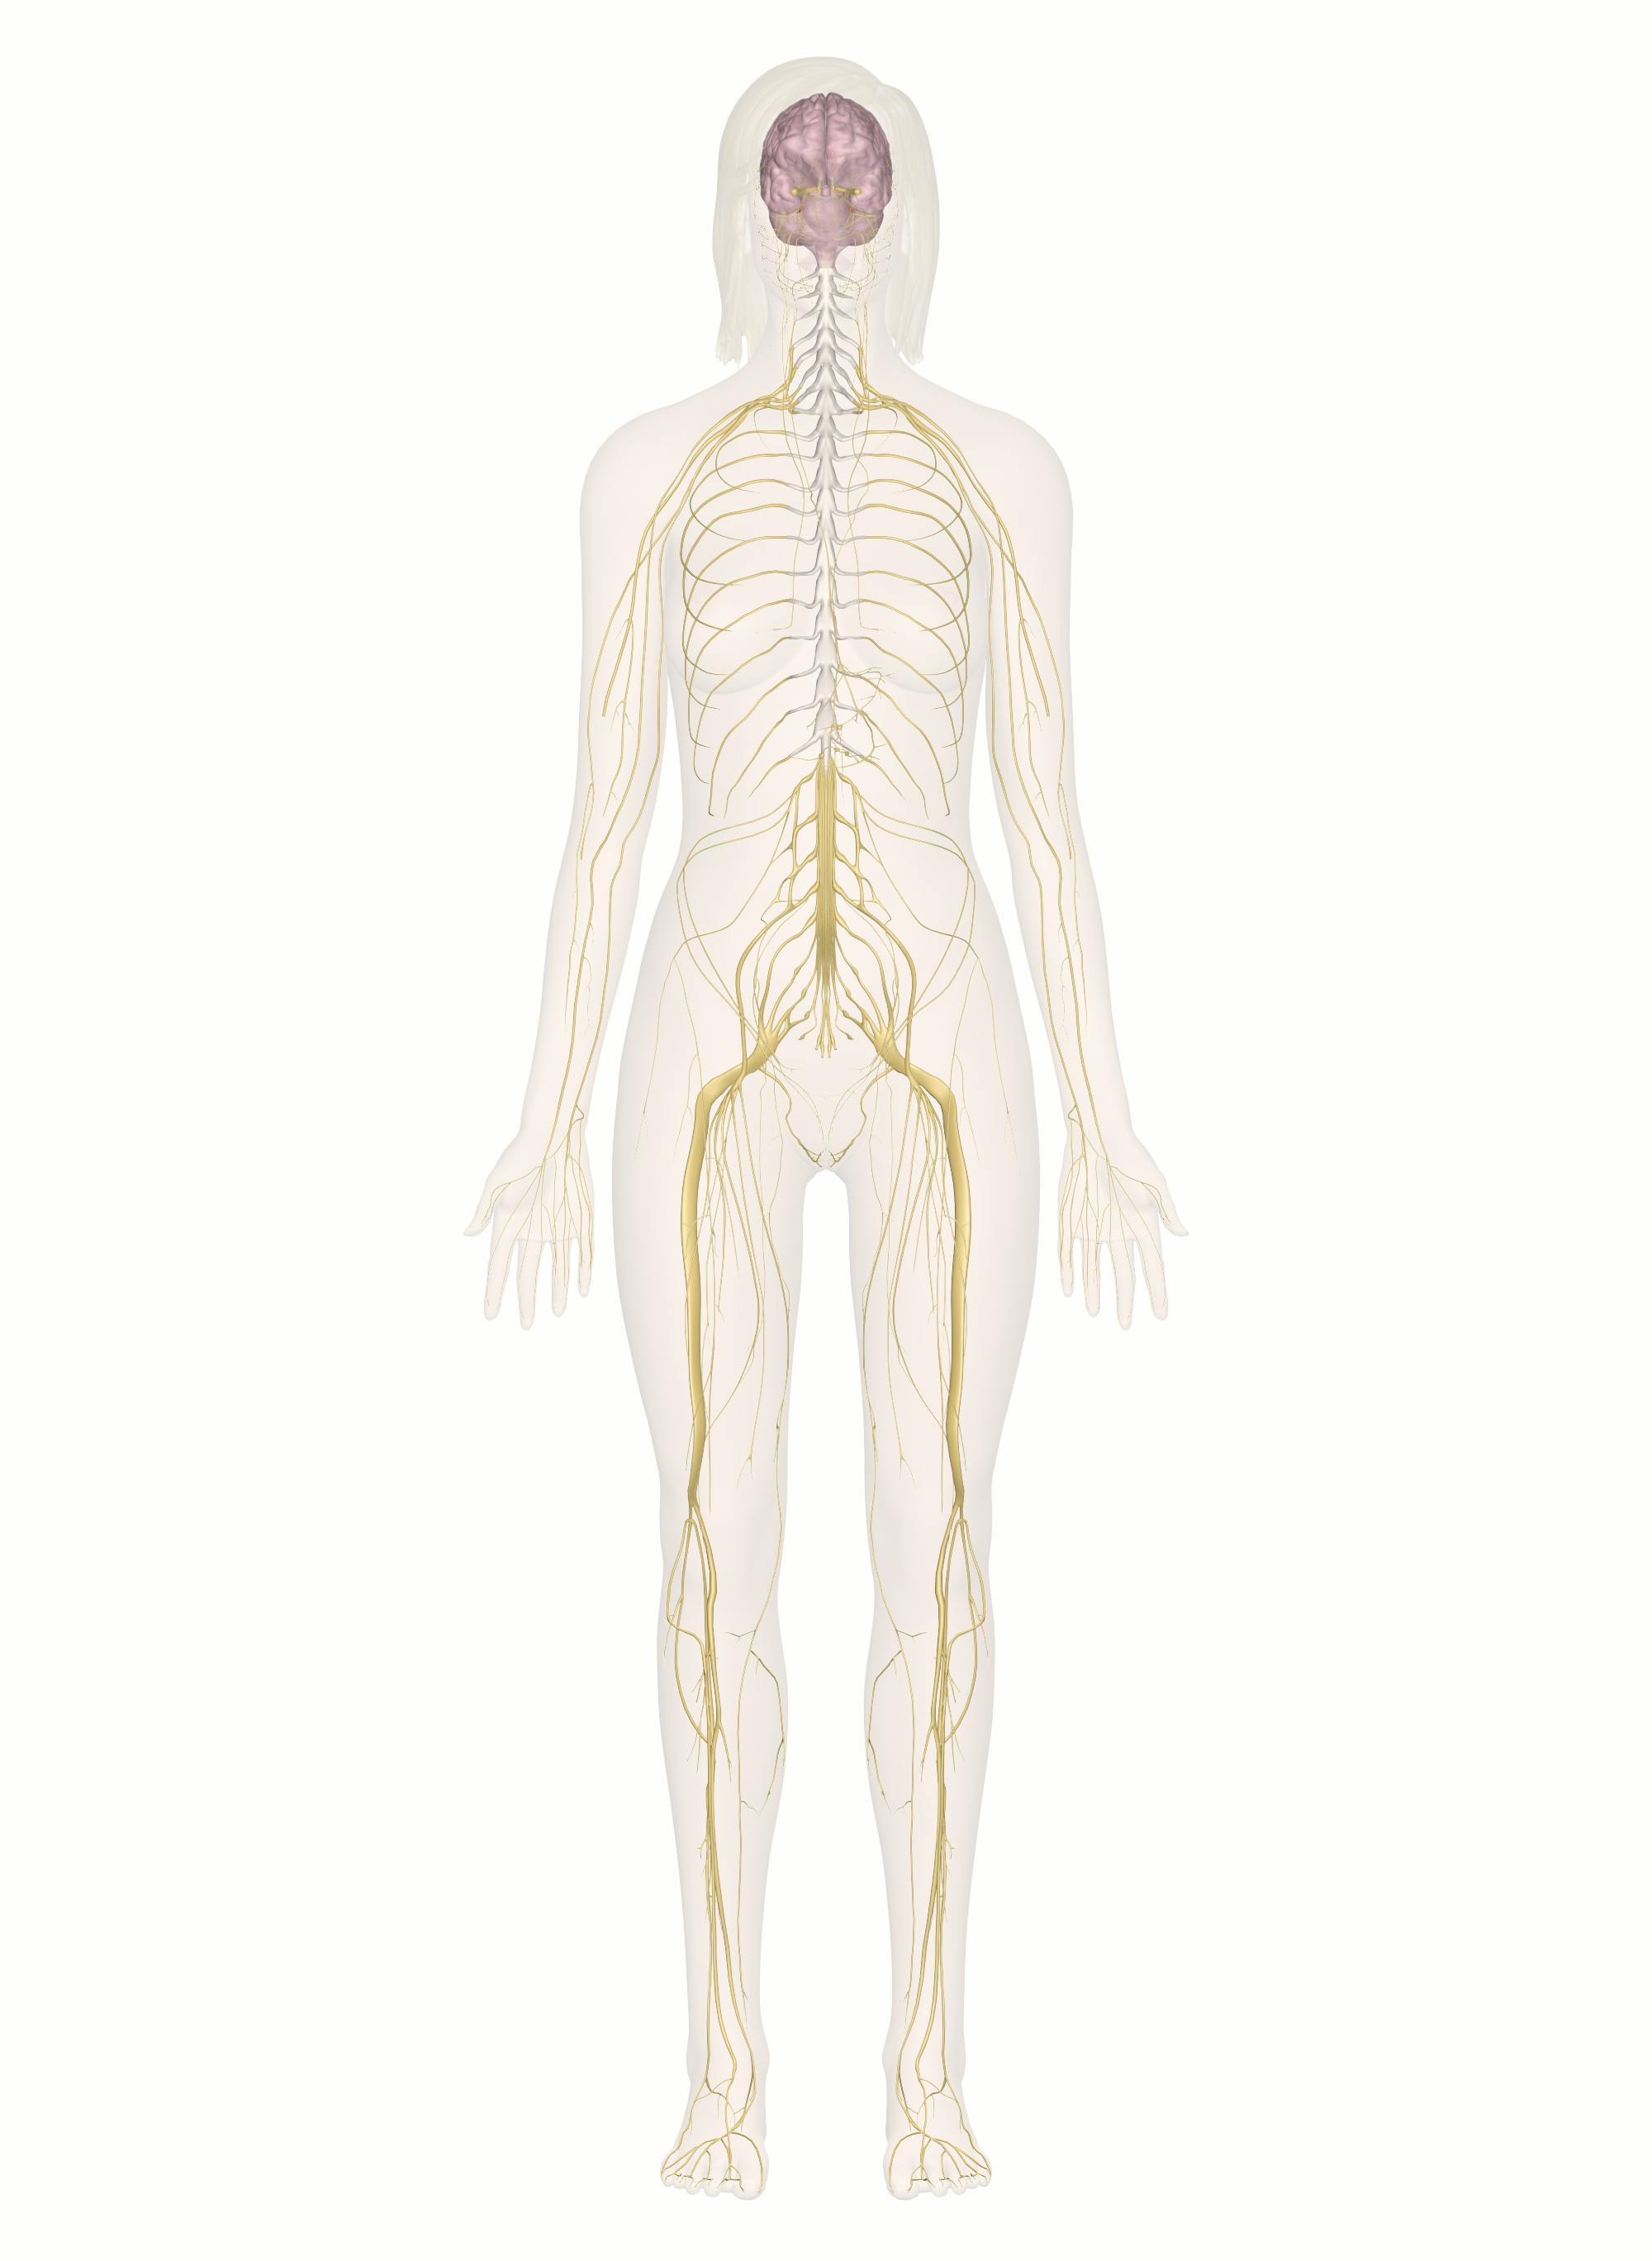 Nervous System Diagram Unlabeled